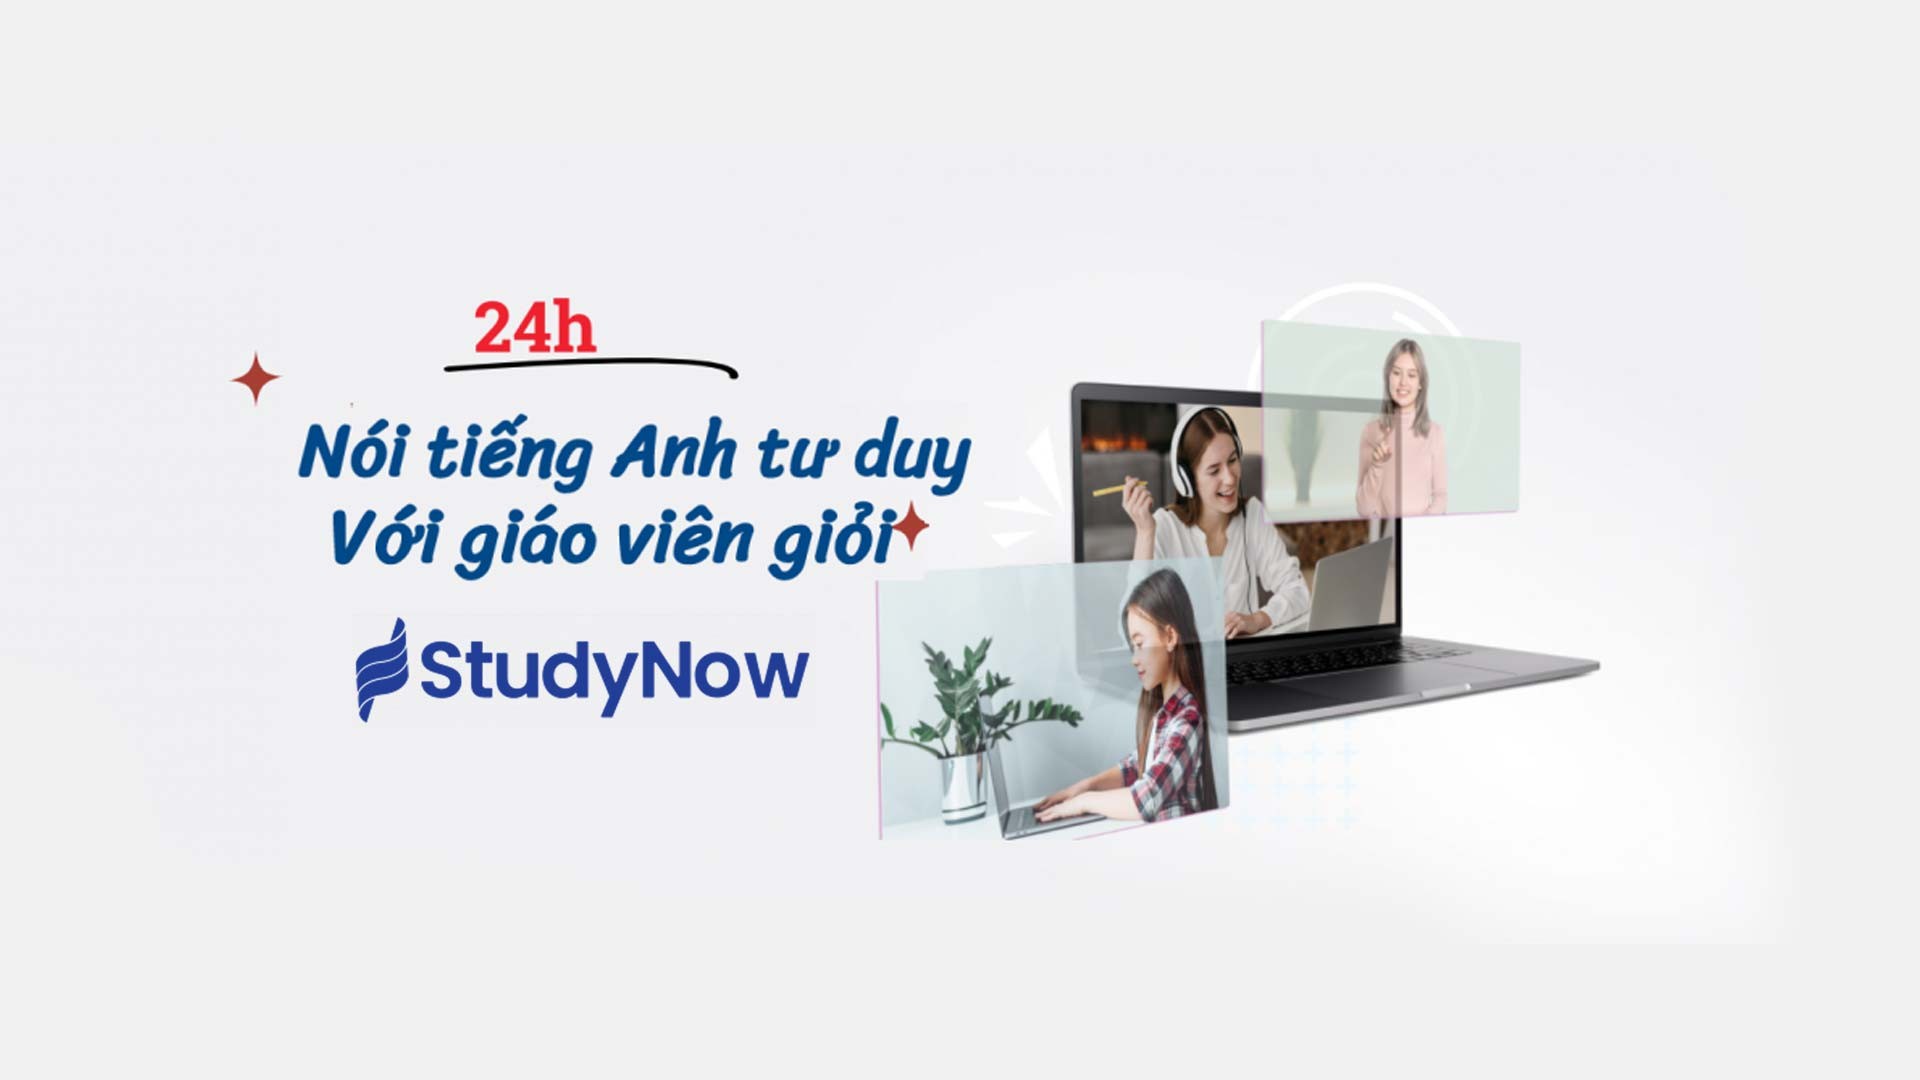 Edu2Review đảm bảo quyền lợi học phí cho học viên đăng ký khóa học tại StudyNow